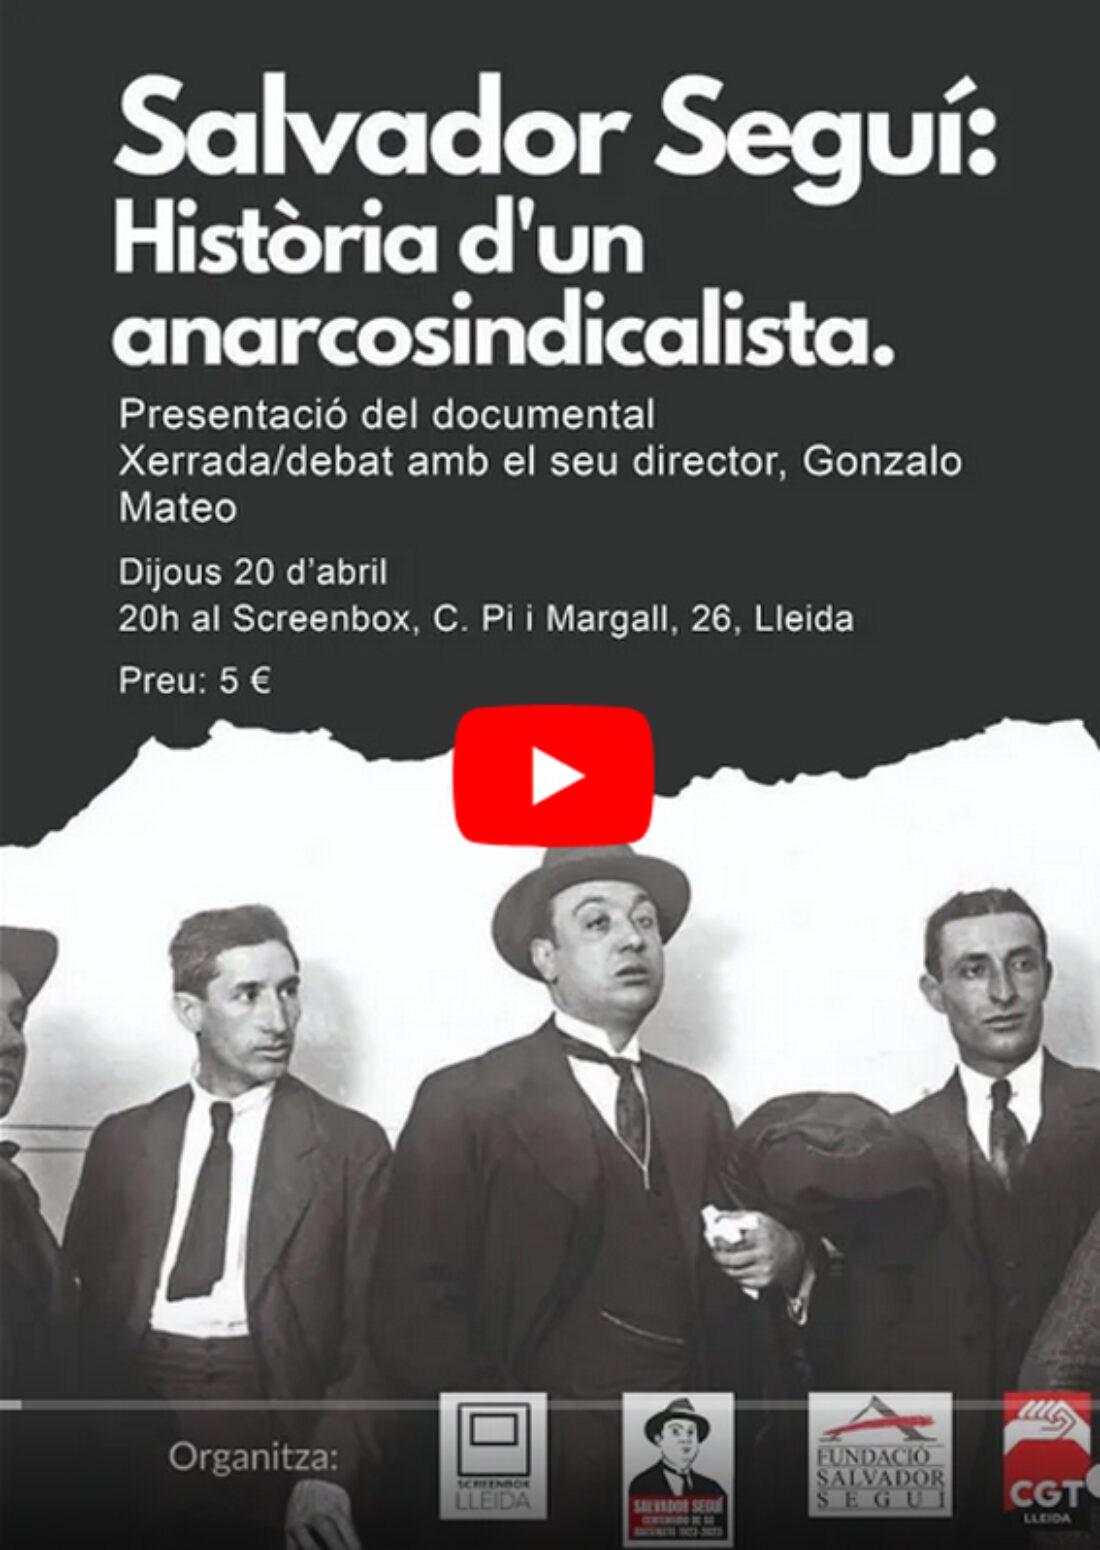 Presentació del documental Salvador Seguí, historia d’un anarcosindicalista»